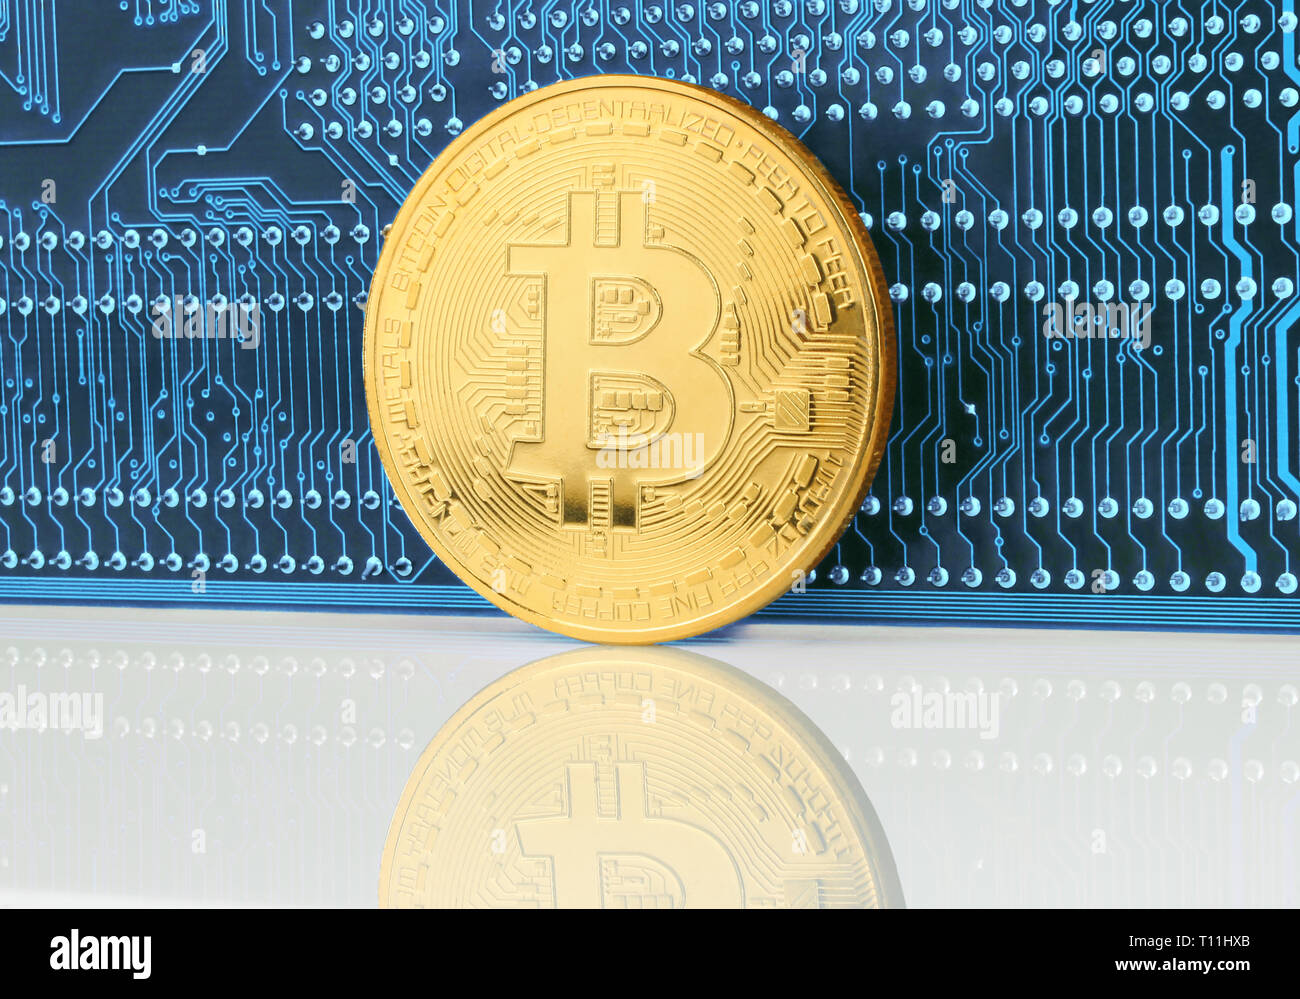 Moneda cryptocurrency Bitcoin en la placa del circuito cerca de fondo Foto de stock